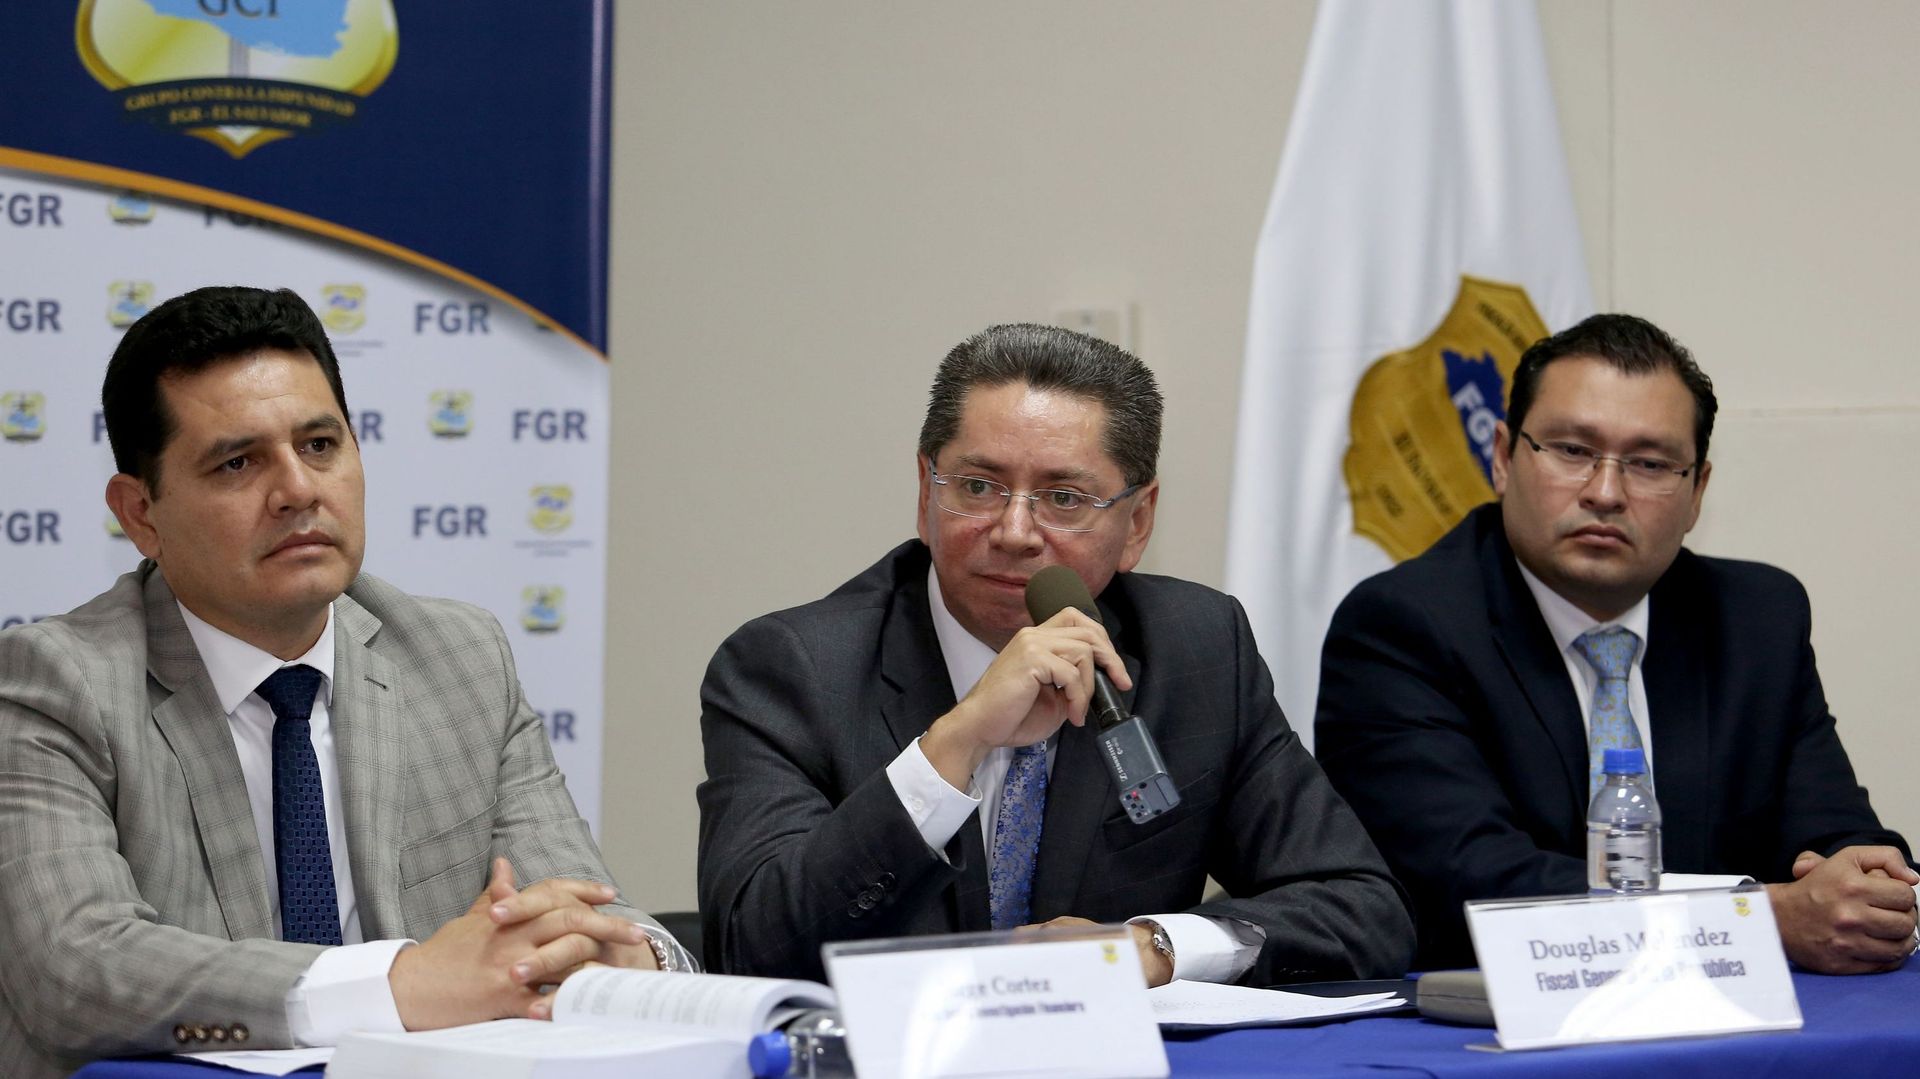 "Un montant global de 246 millions (de dollars) ont été détournés vers des comptes de particuliers au bénéfice des mis en cause", a déclaré le procureur général du Salvador Douglas Meléndez lors d'une conférence de presse.